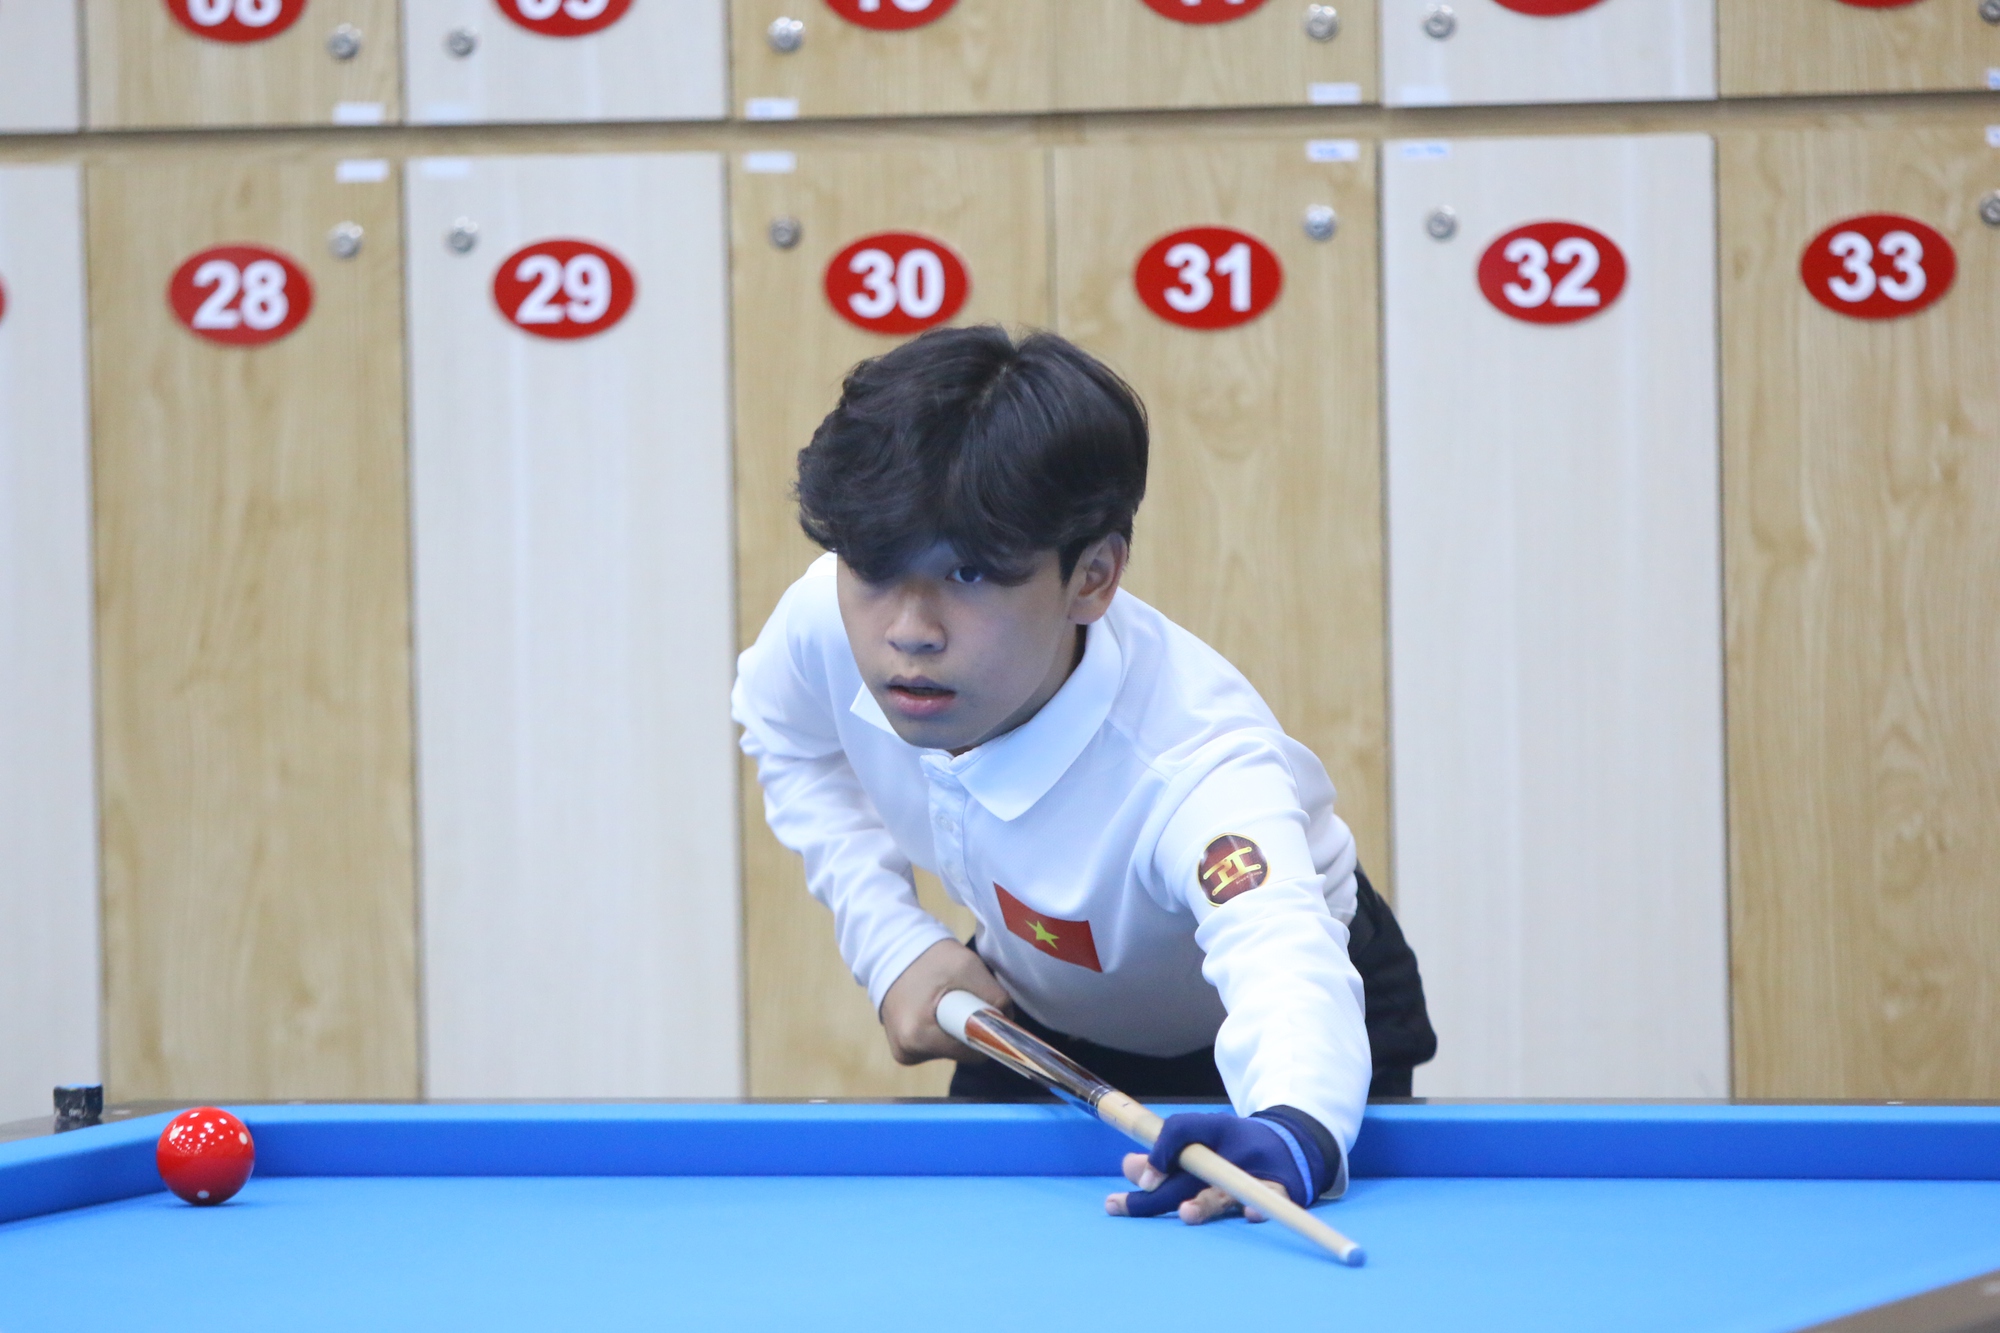 Hai cơ thủ gen Z giành suất dự Giải Vô địch billiards trẻ thế giới - Ảnh 1.